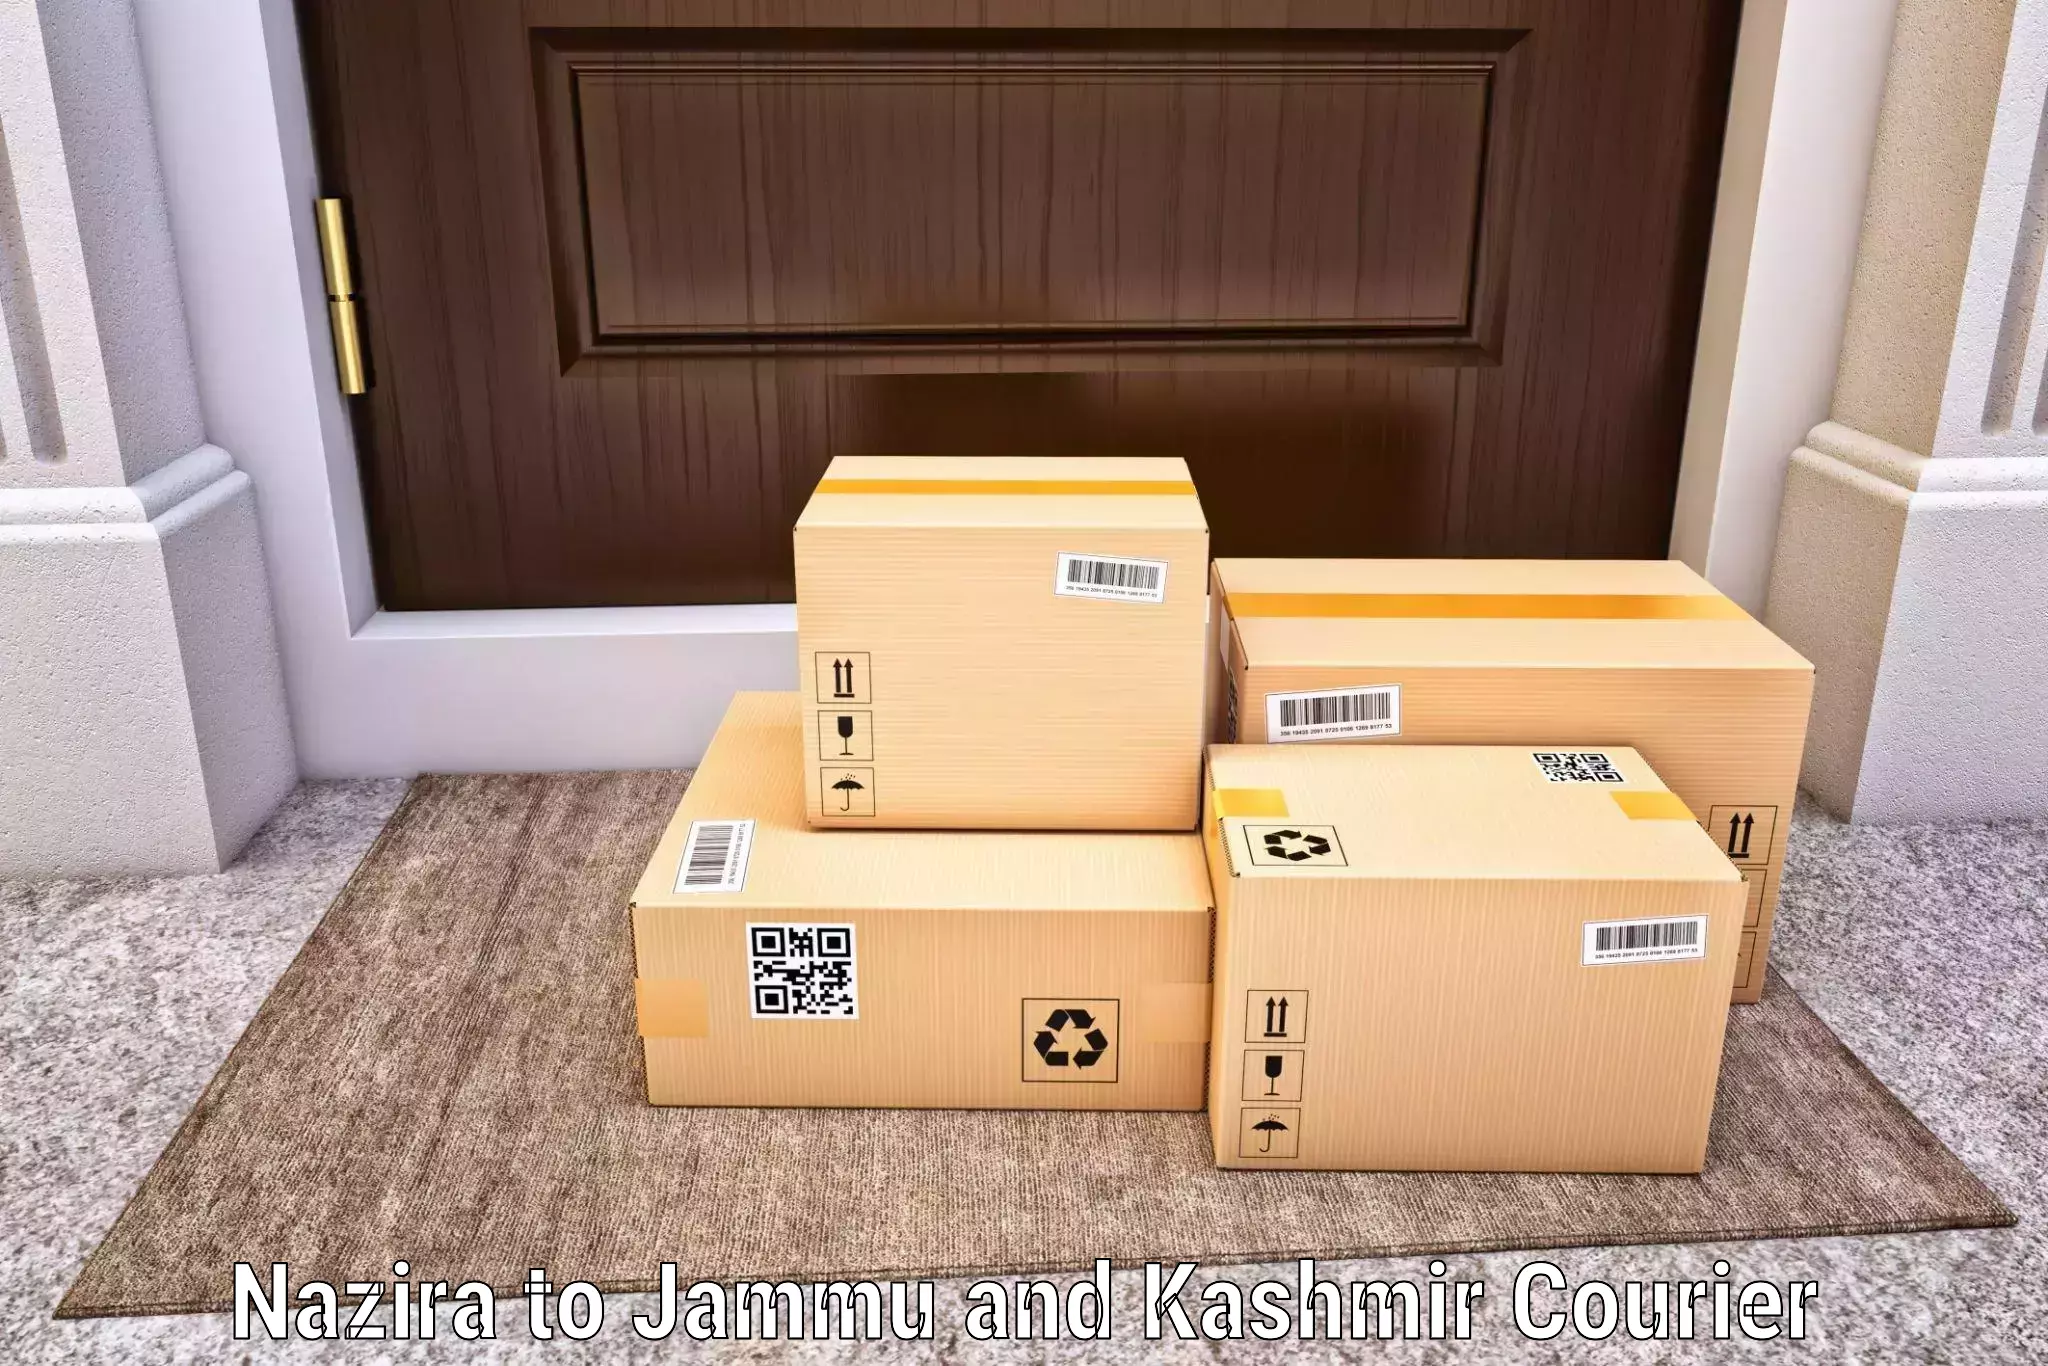 Ocean freight courier Nazira to Srinagar Kashmir